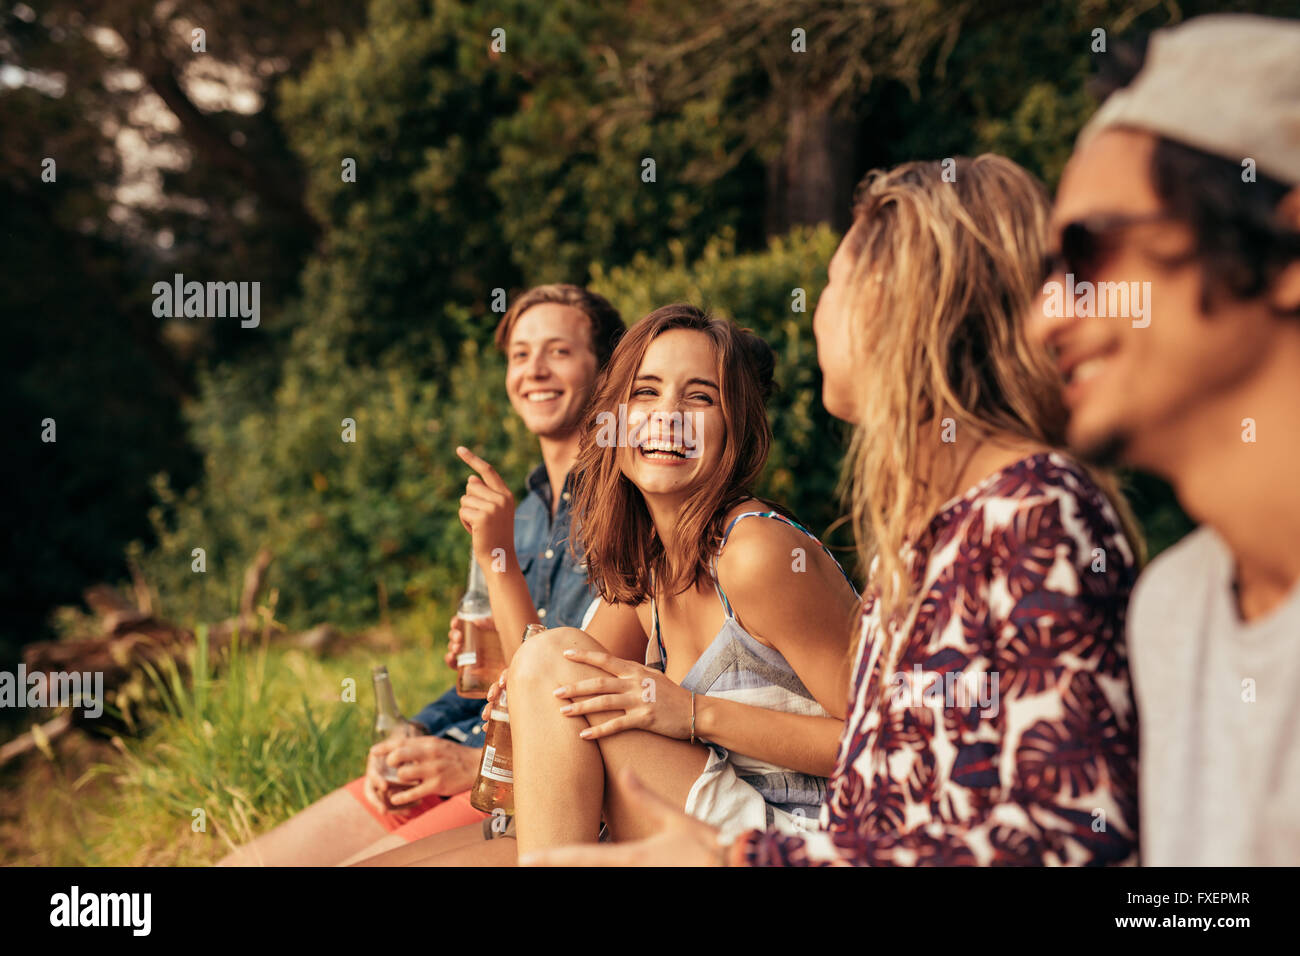 Porträt von fröhlichen jungen Freunden hängen mit Bier. Gruppe von Freunden im Freien zu sitzen und Spaß haben. Stockfoto